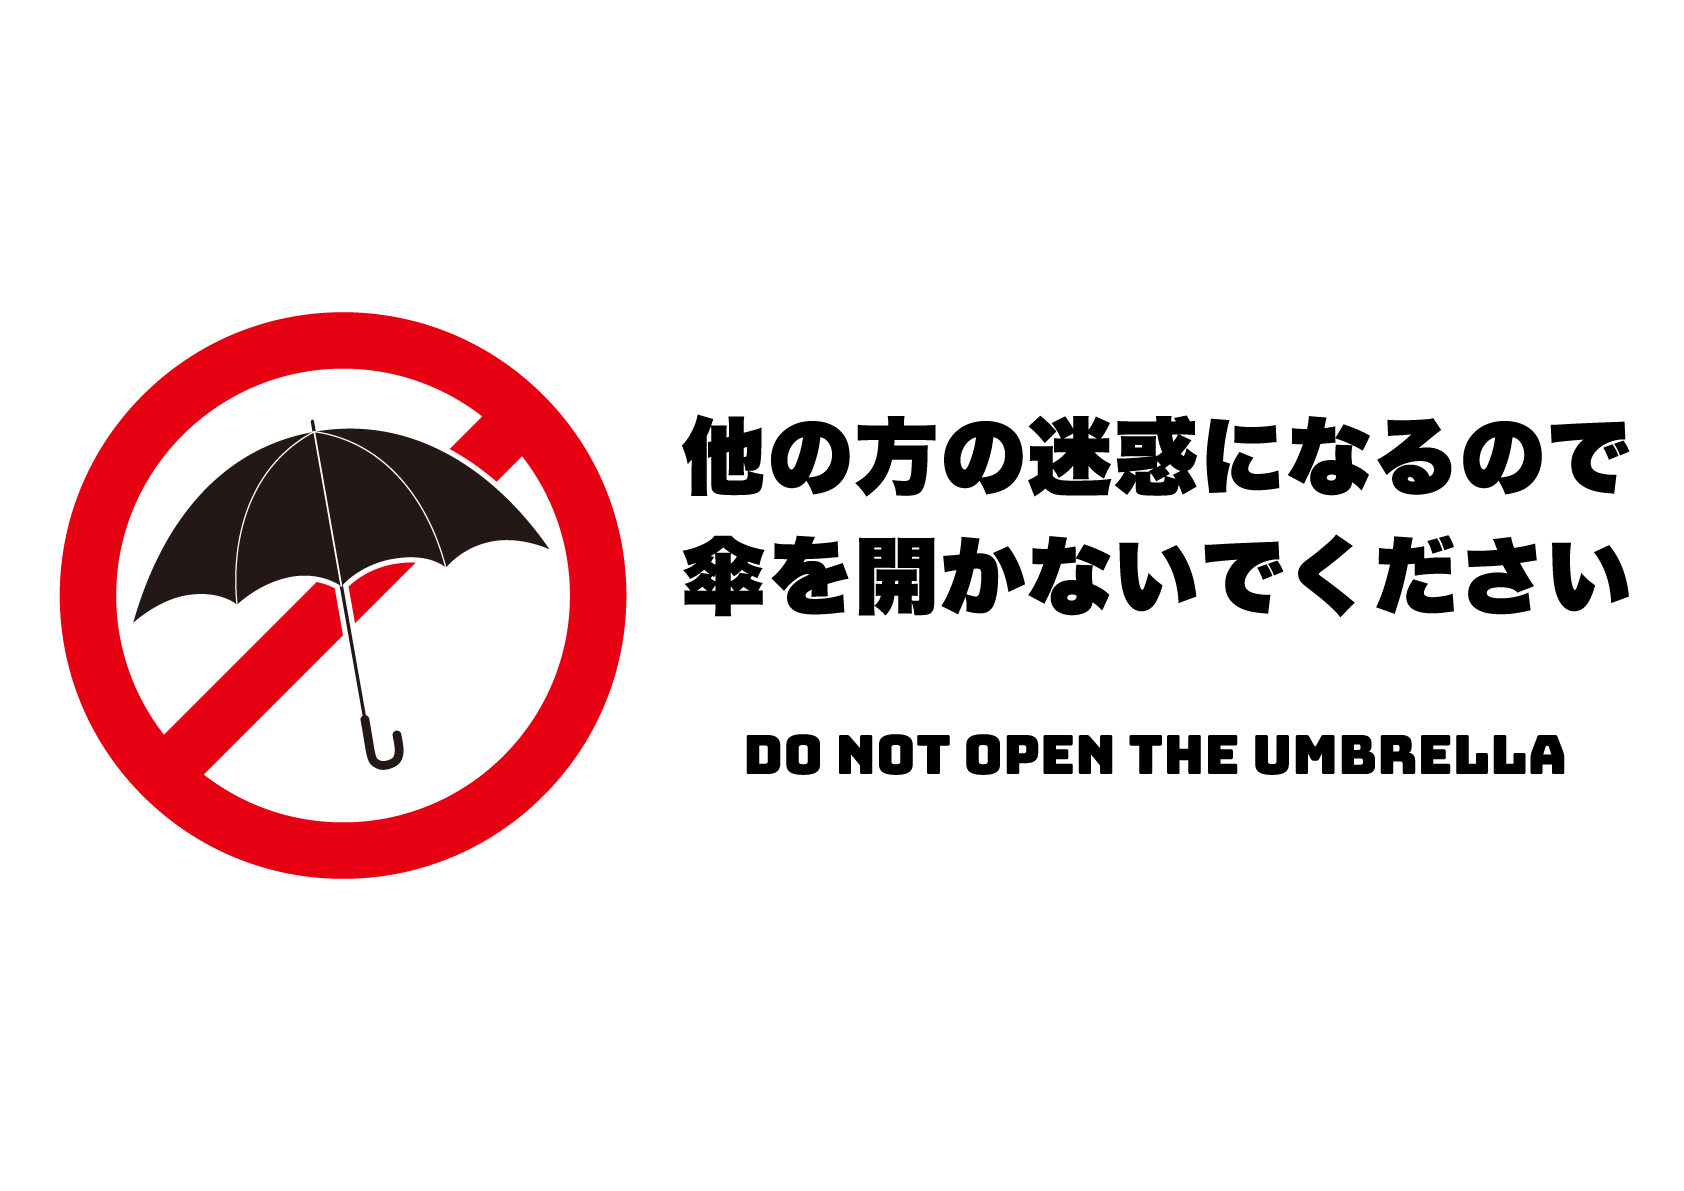 傘を開かないで（横）の張り紙